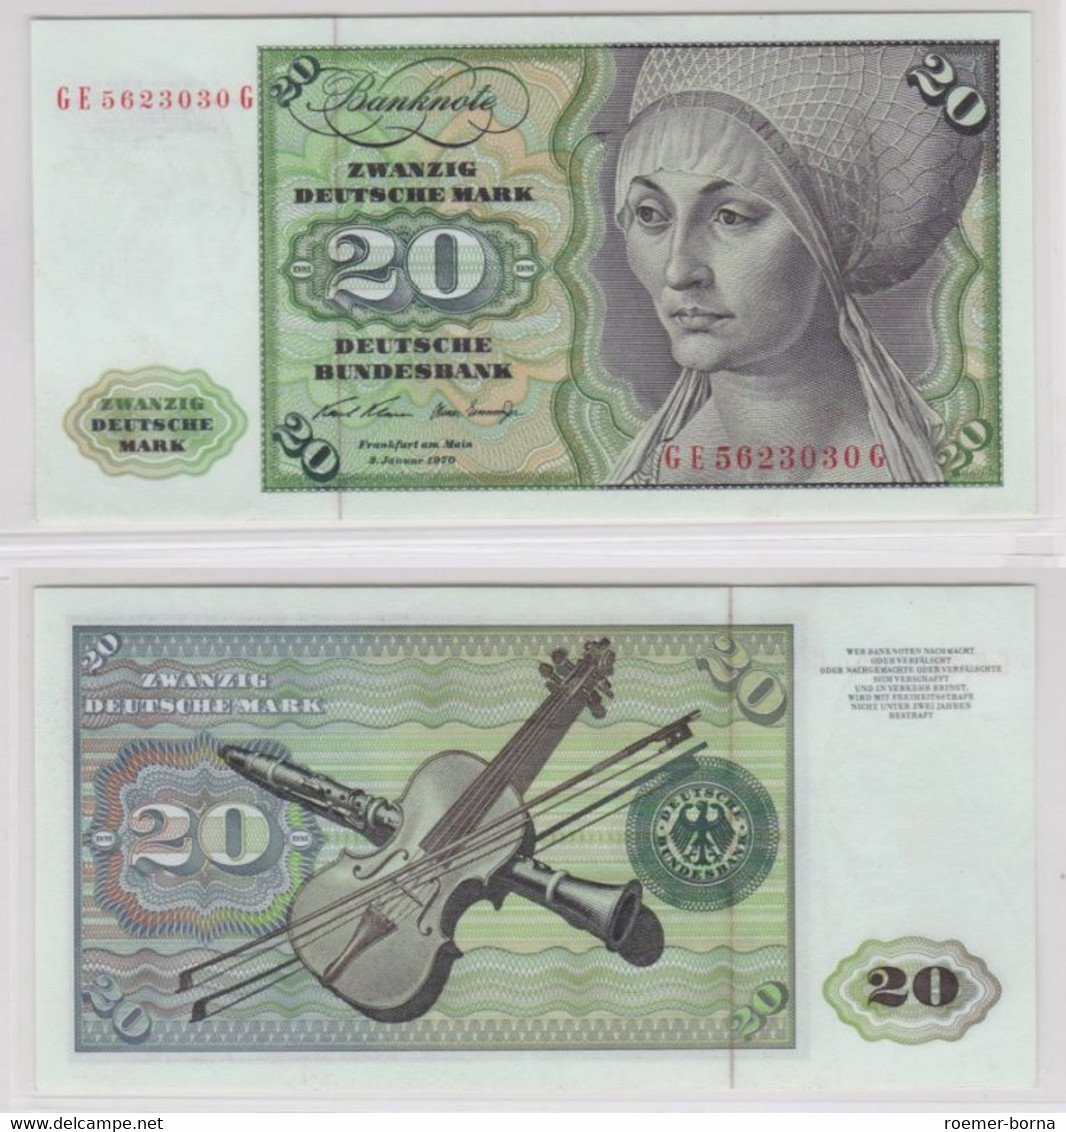 T145971 Banknote 20 DM Deutsche Mark Ro. 271b Schein 2.Jan. 1970 KN GE 5623030 G - 20 Deutsche Mark